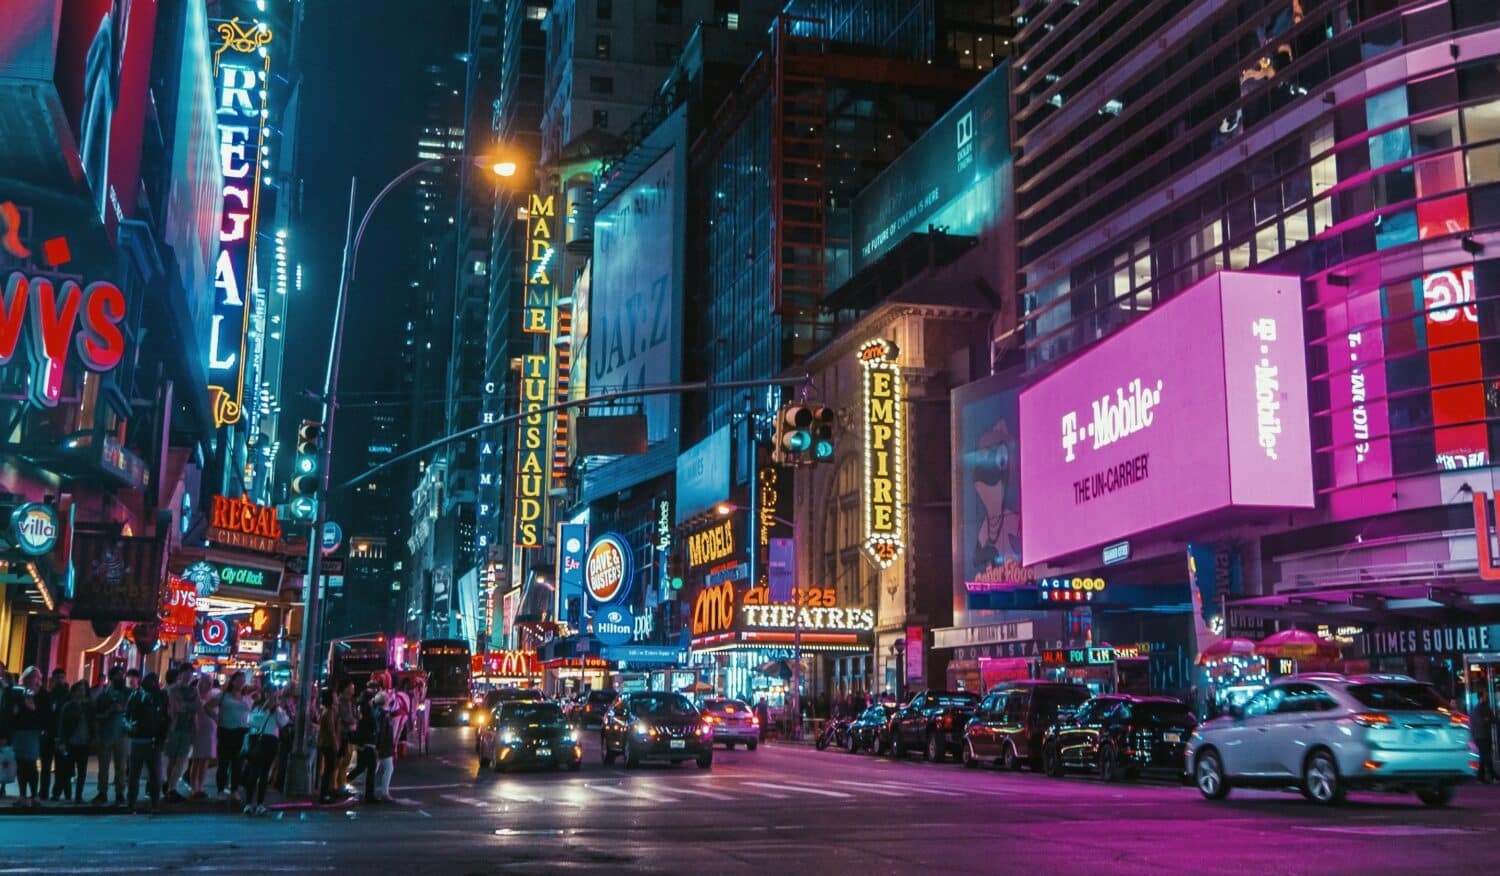 avenida da Times Square vista de noite, com vários painéis iluminados e coloridos margeando as ruas com diversos carros e pessoas em movimento.